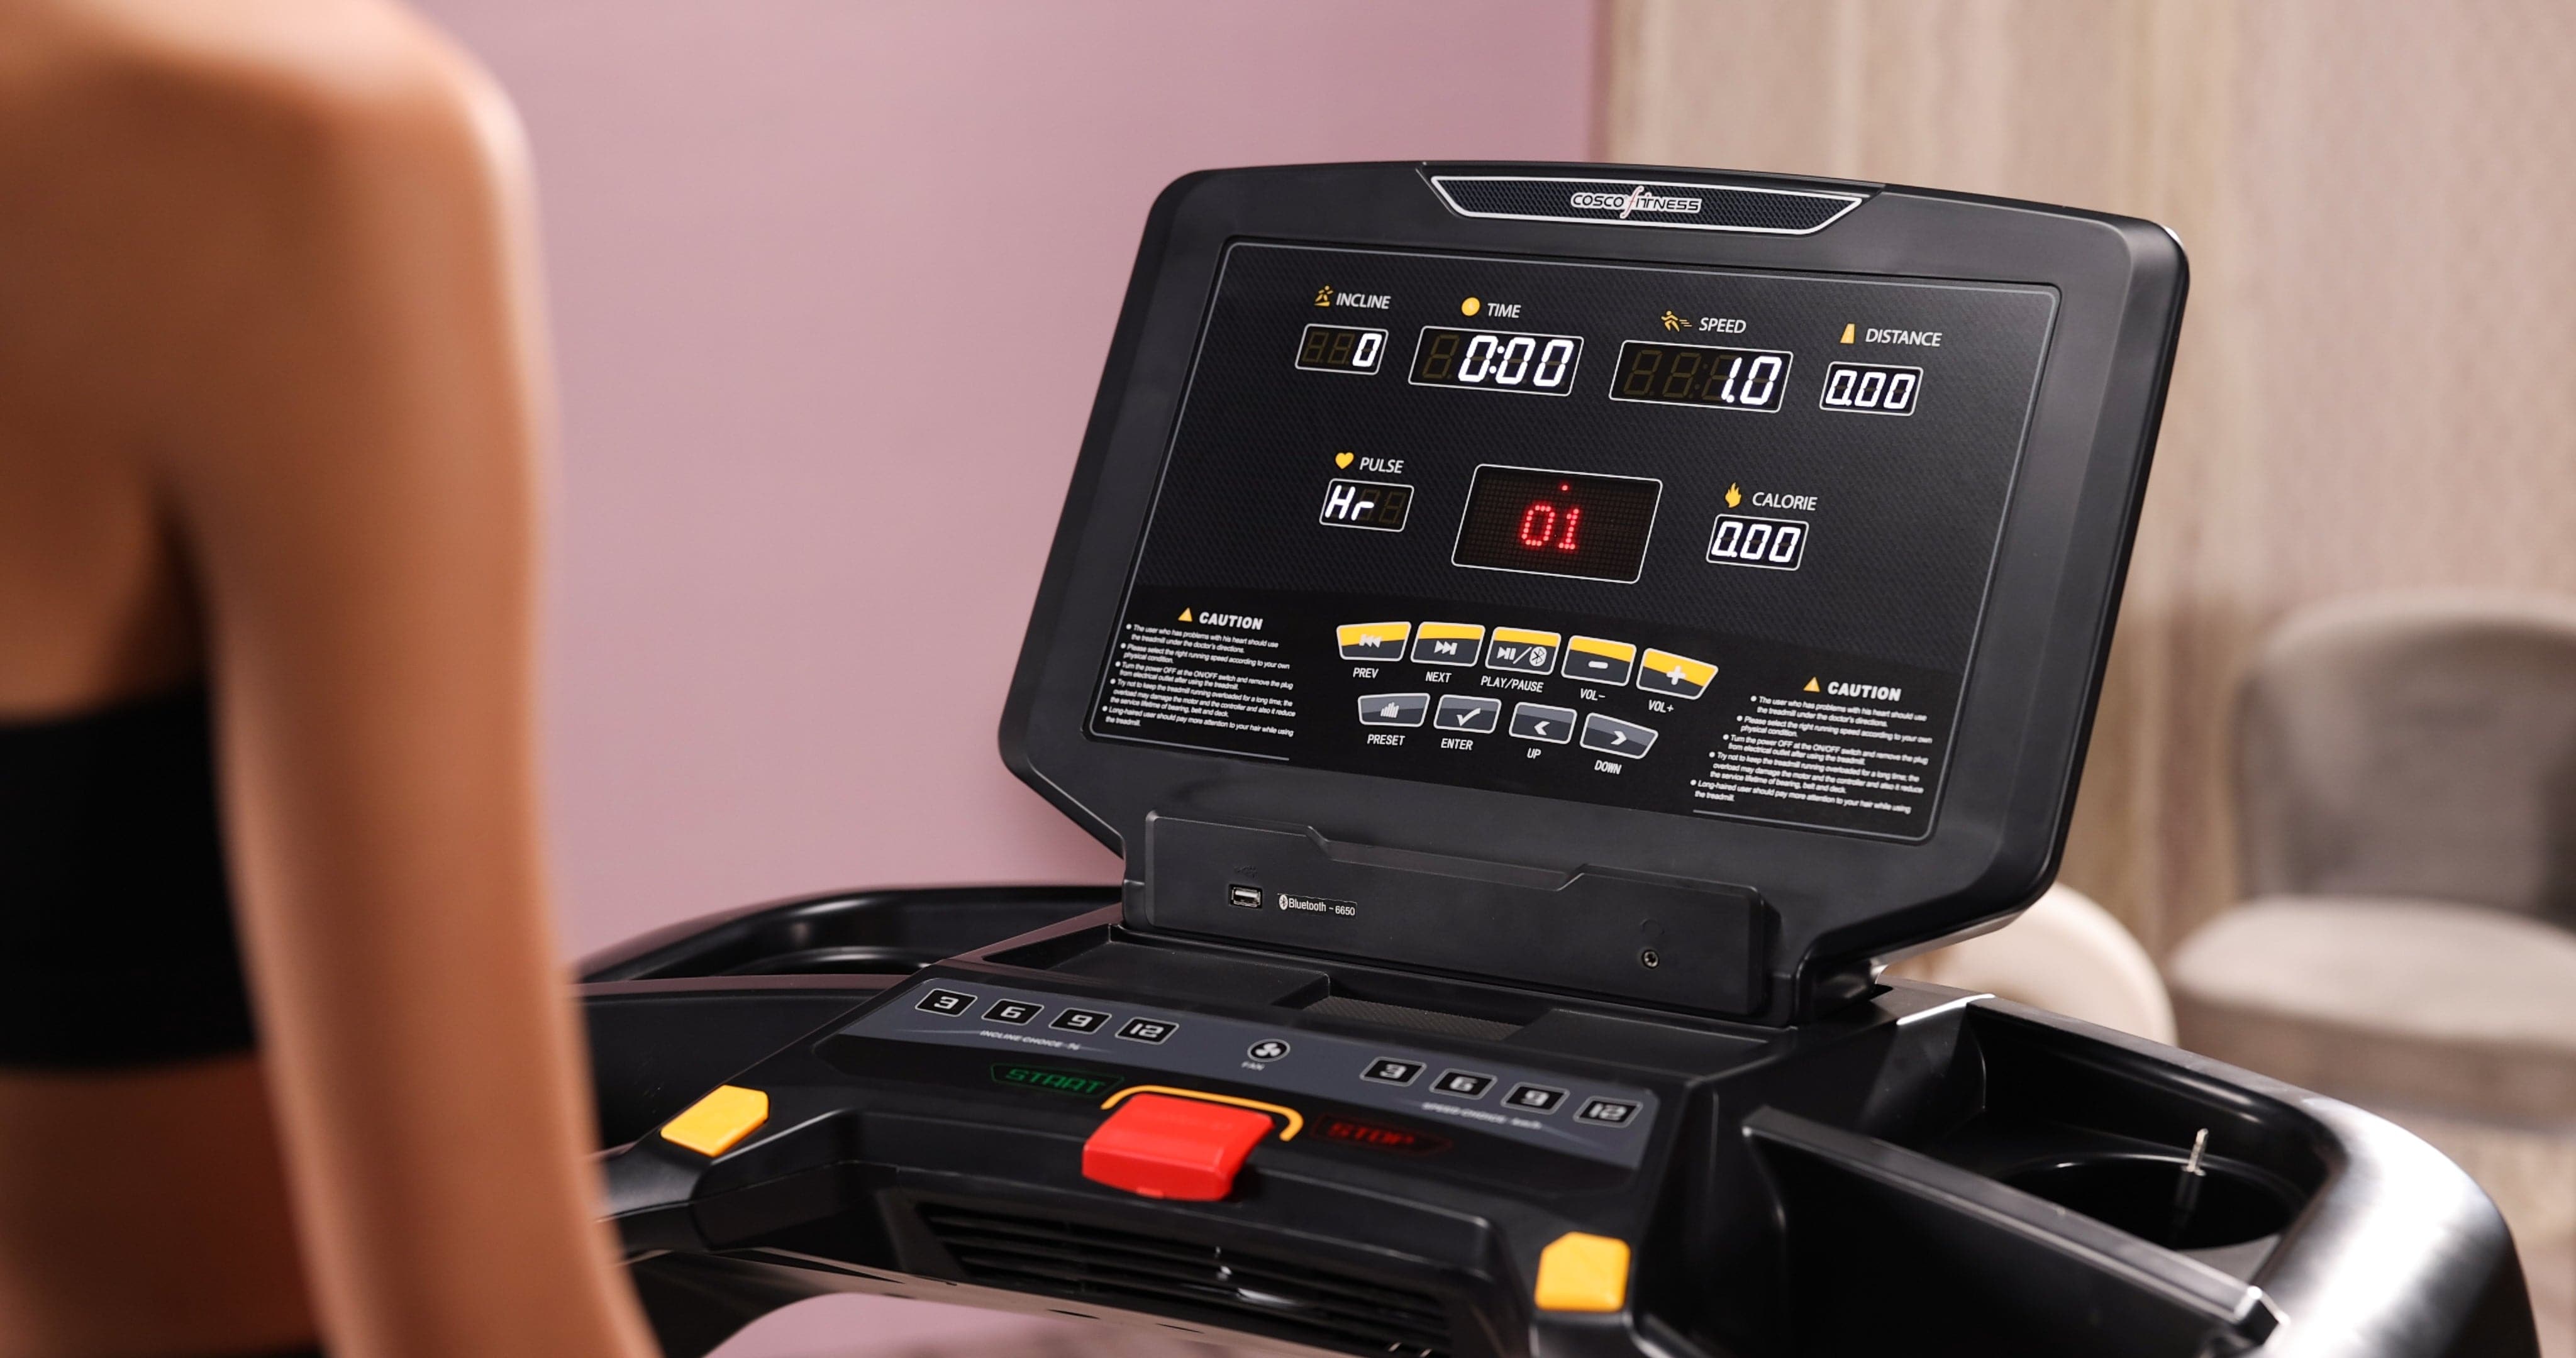 AC 18 (5 HP AC Motor Workout Running Treadmill)